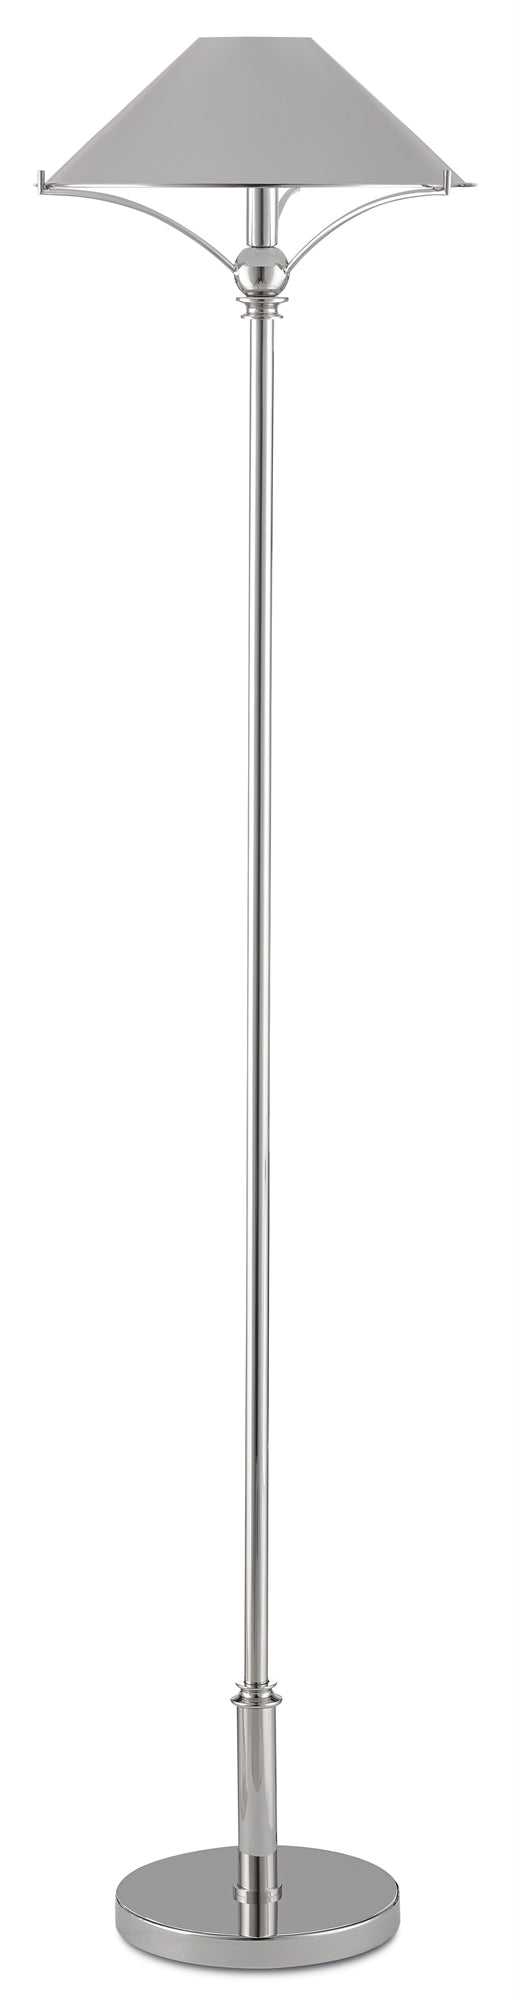 Currey and Company Maarla Nickel Floor Lamp 8000-0051